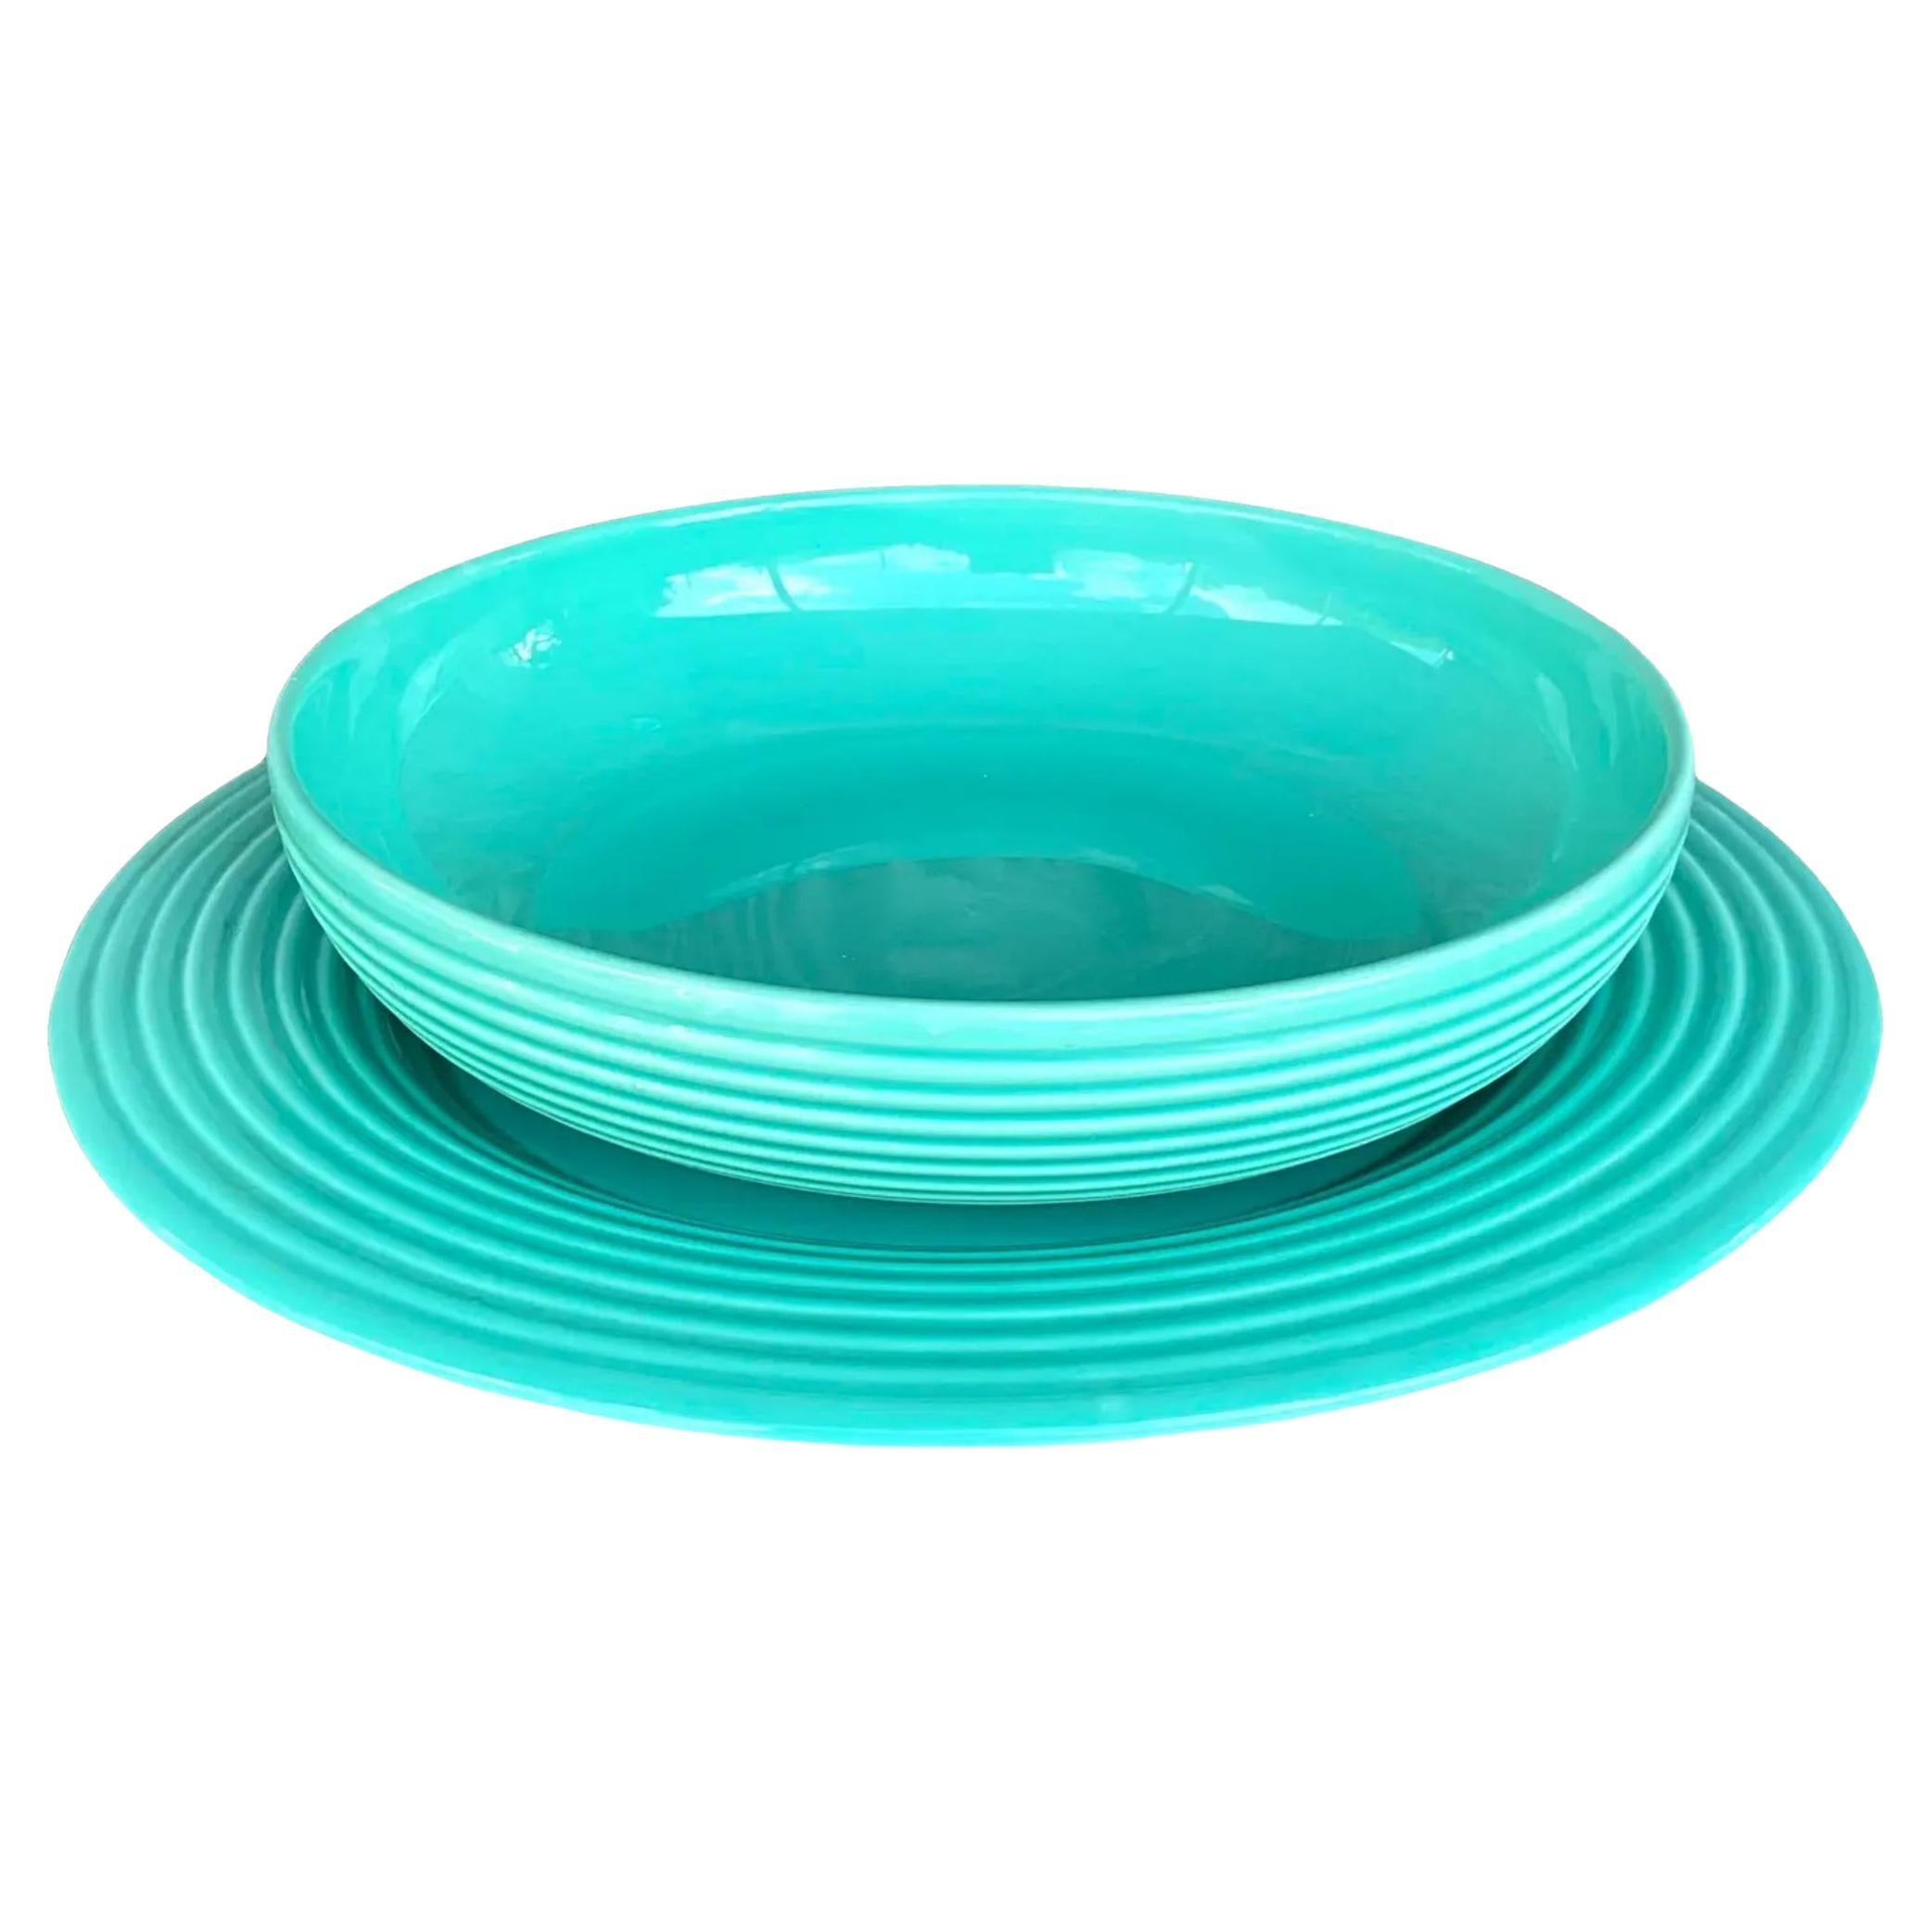 Vintage Boho Glazed Ceramic Platter and Bowl Serving Set- 2 Pieces For Sale